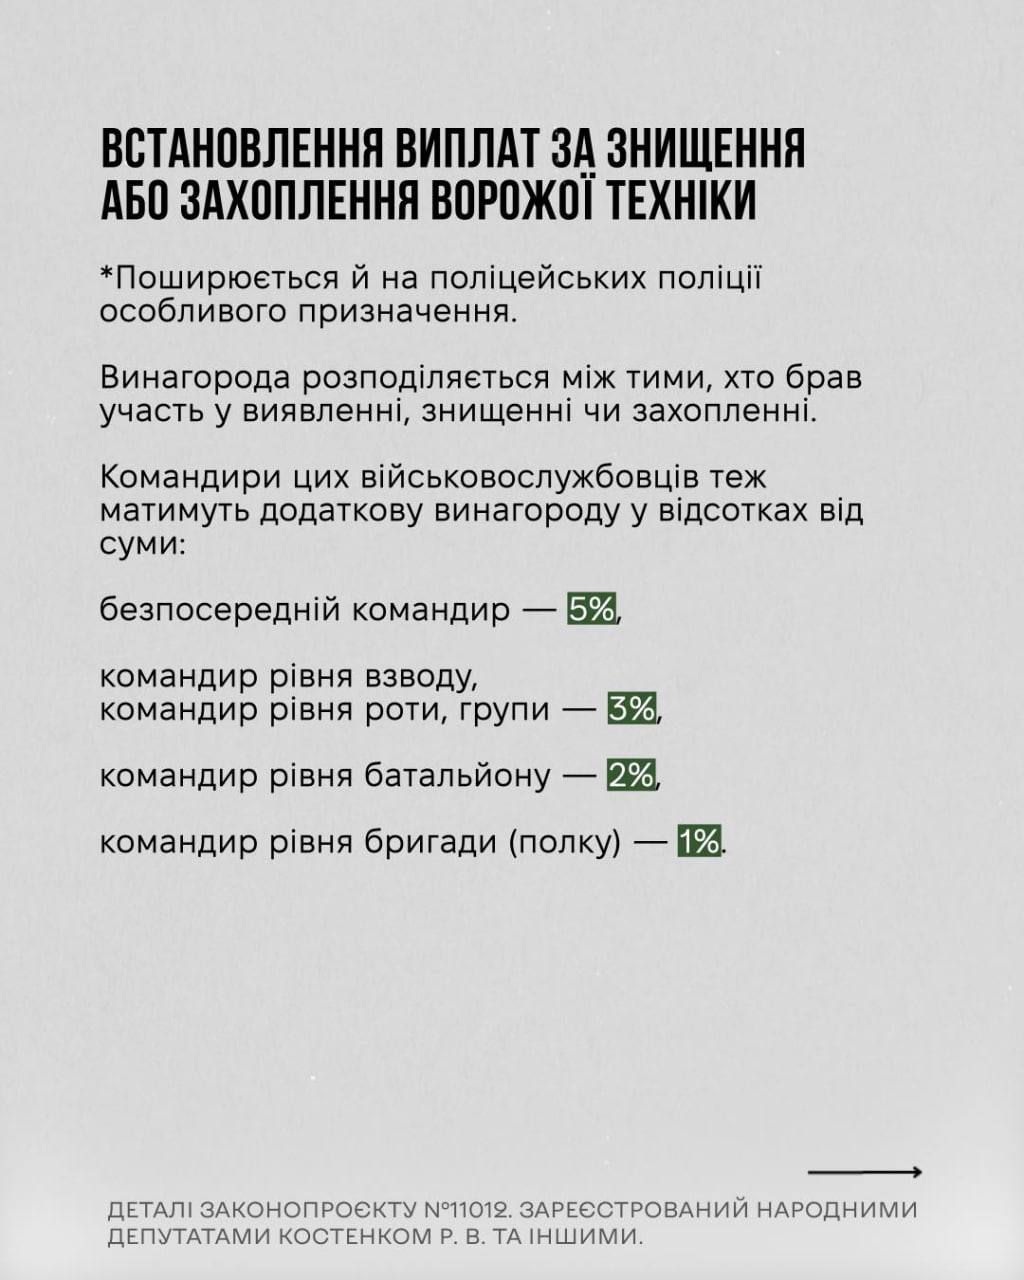 Снимок законопроекта на rada.gov.ua (с.3)